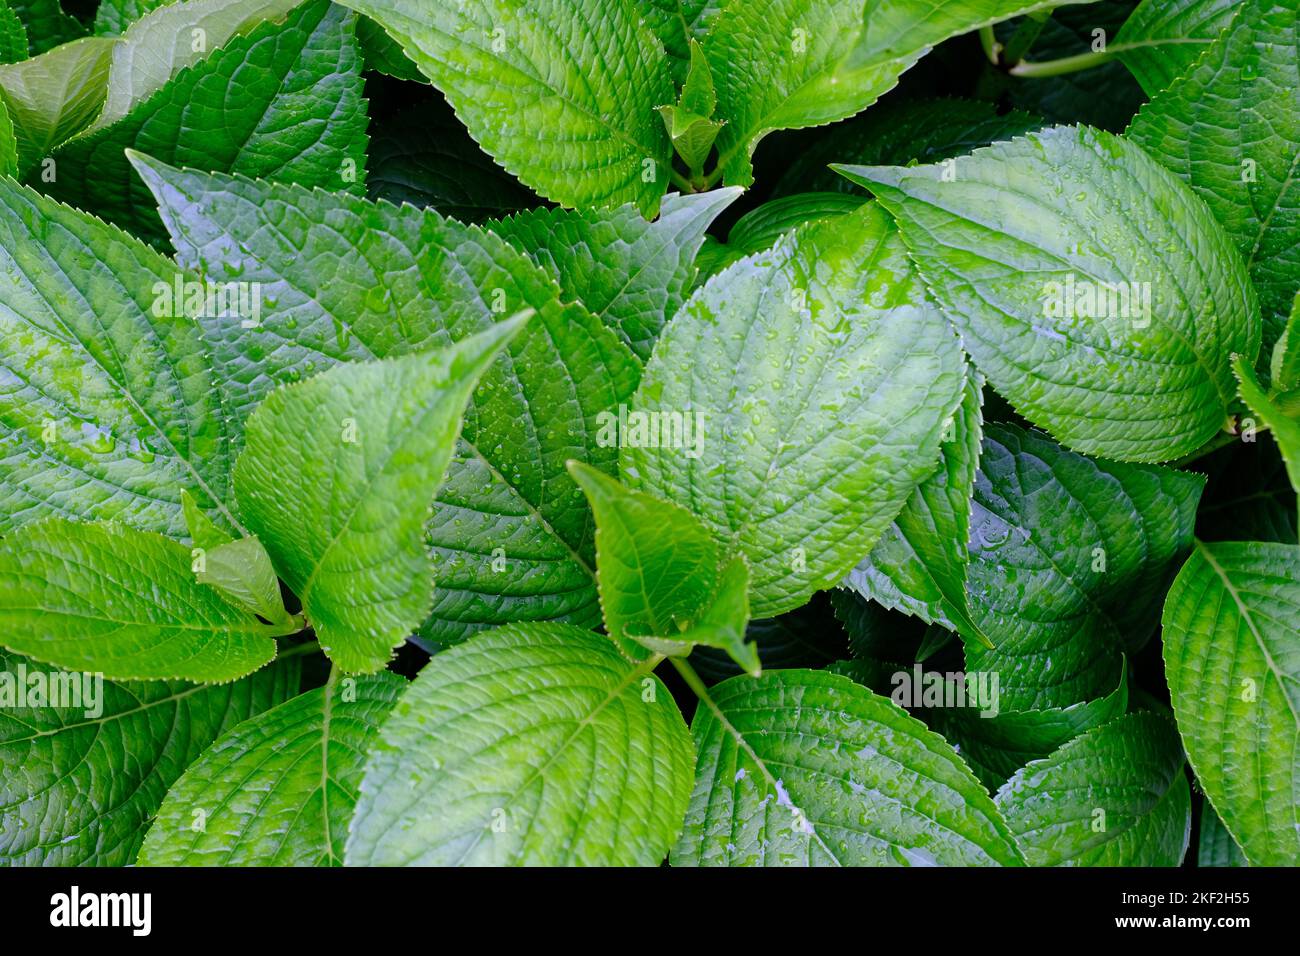 Foglie fresche e verdi su piante da giardino. Verde e vibrante con gocce d'acqua. Immagine di sfondo. Foto Stock